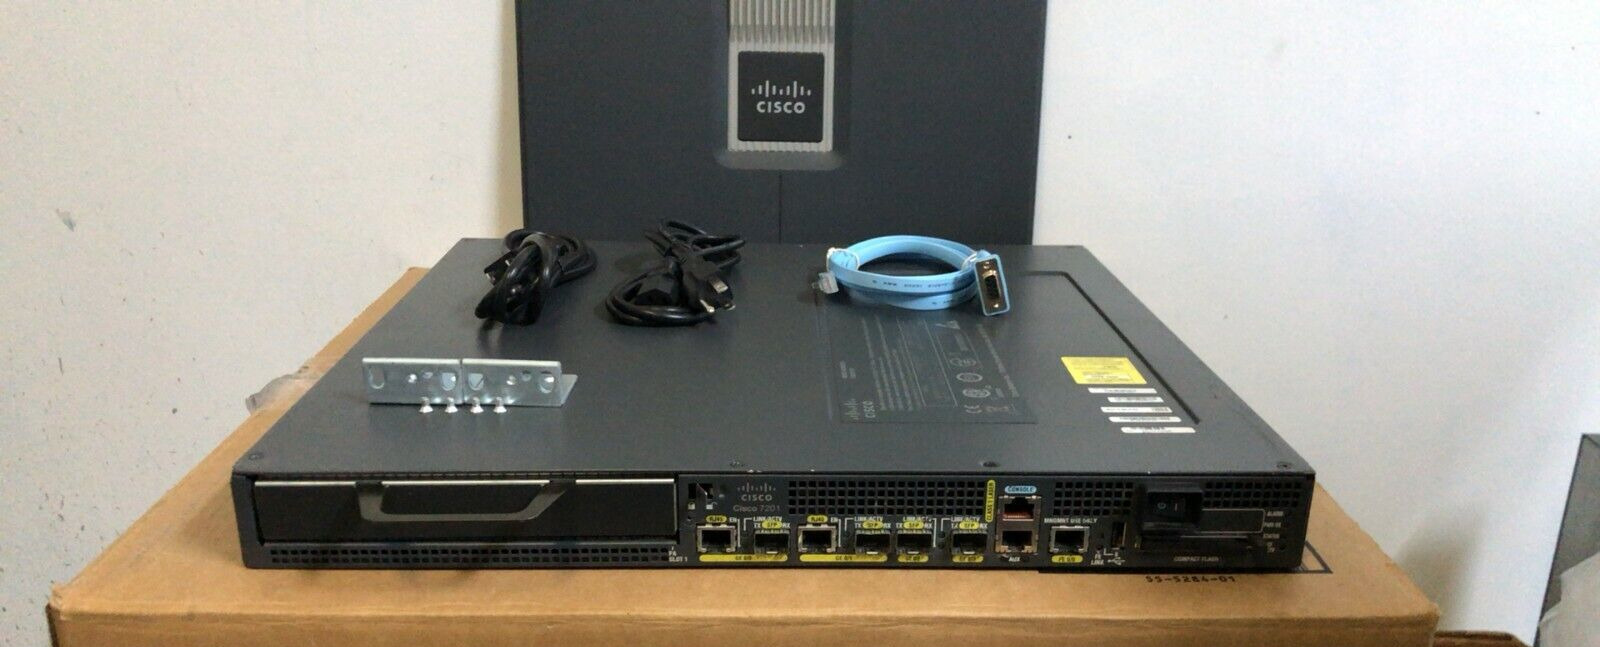 Cisco 7201 4-Port Gigabit Router CISCO7201 Dual AC Pwr NPE-G2 2Gig DRAM ios-15.2